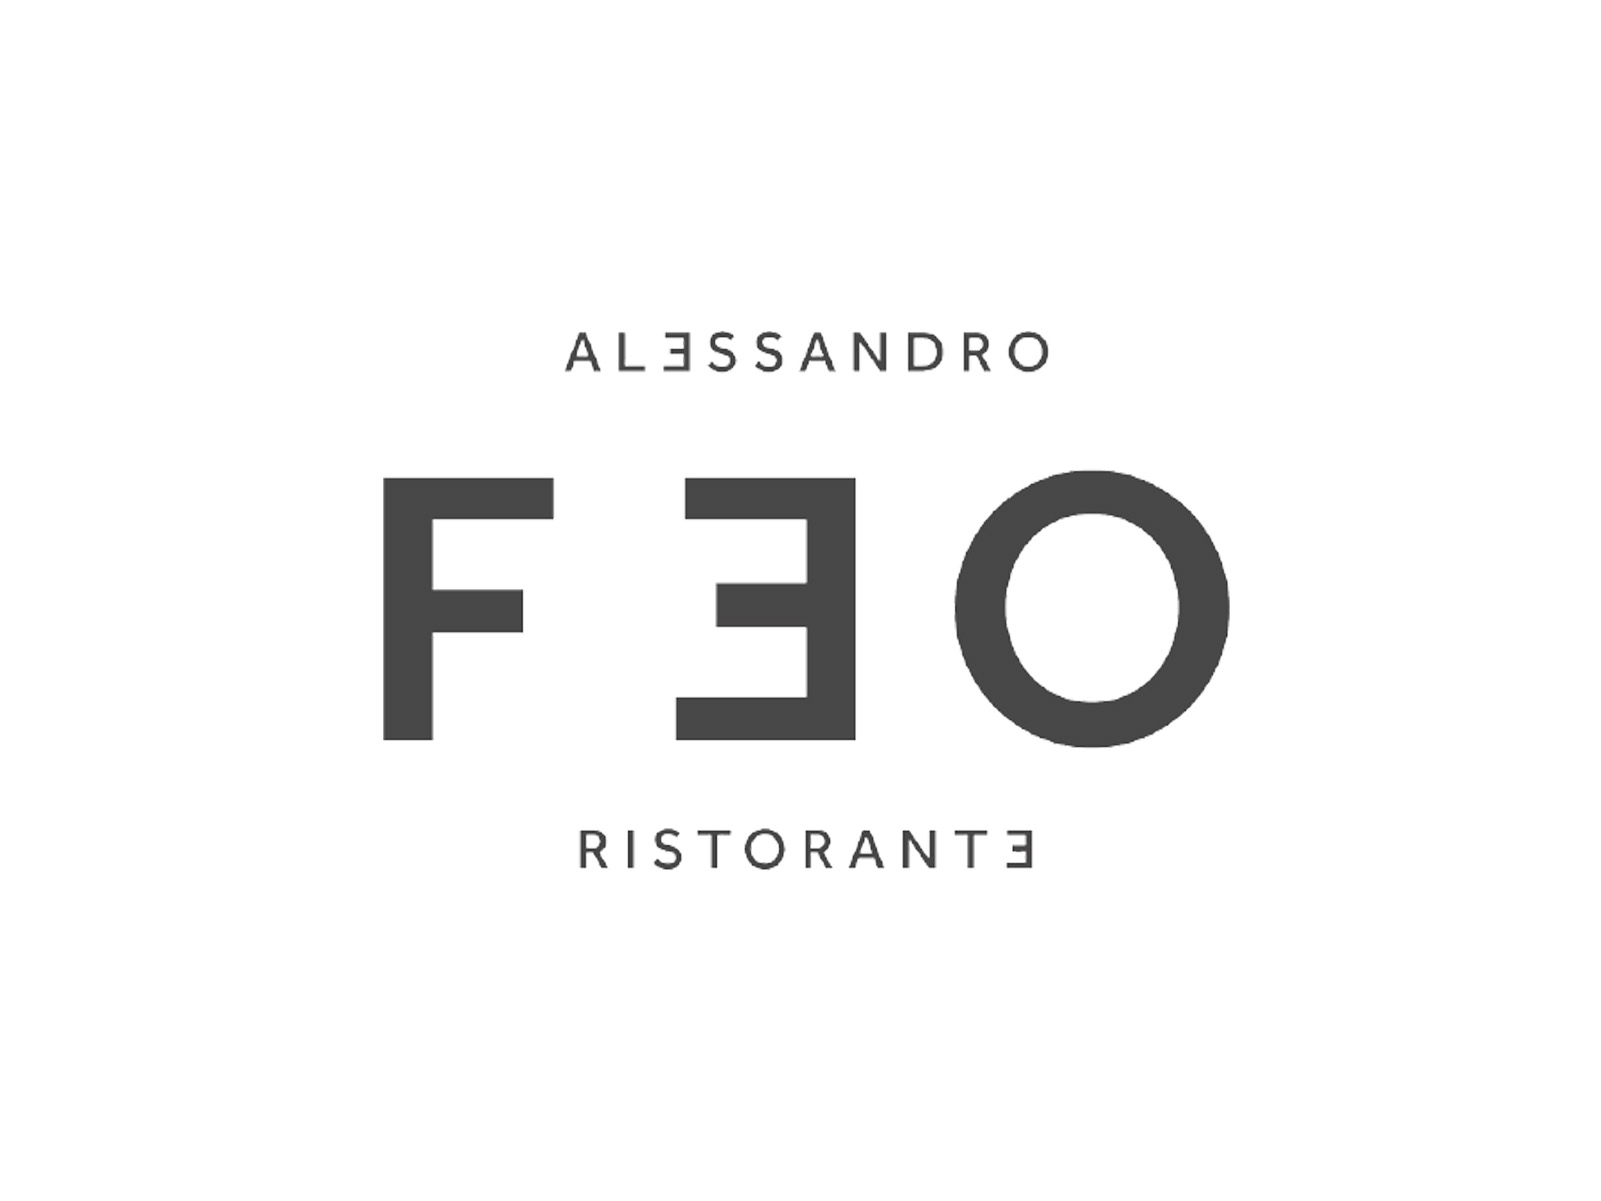 Alessandro Feo Restaurant